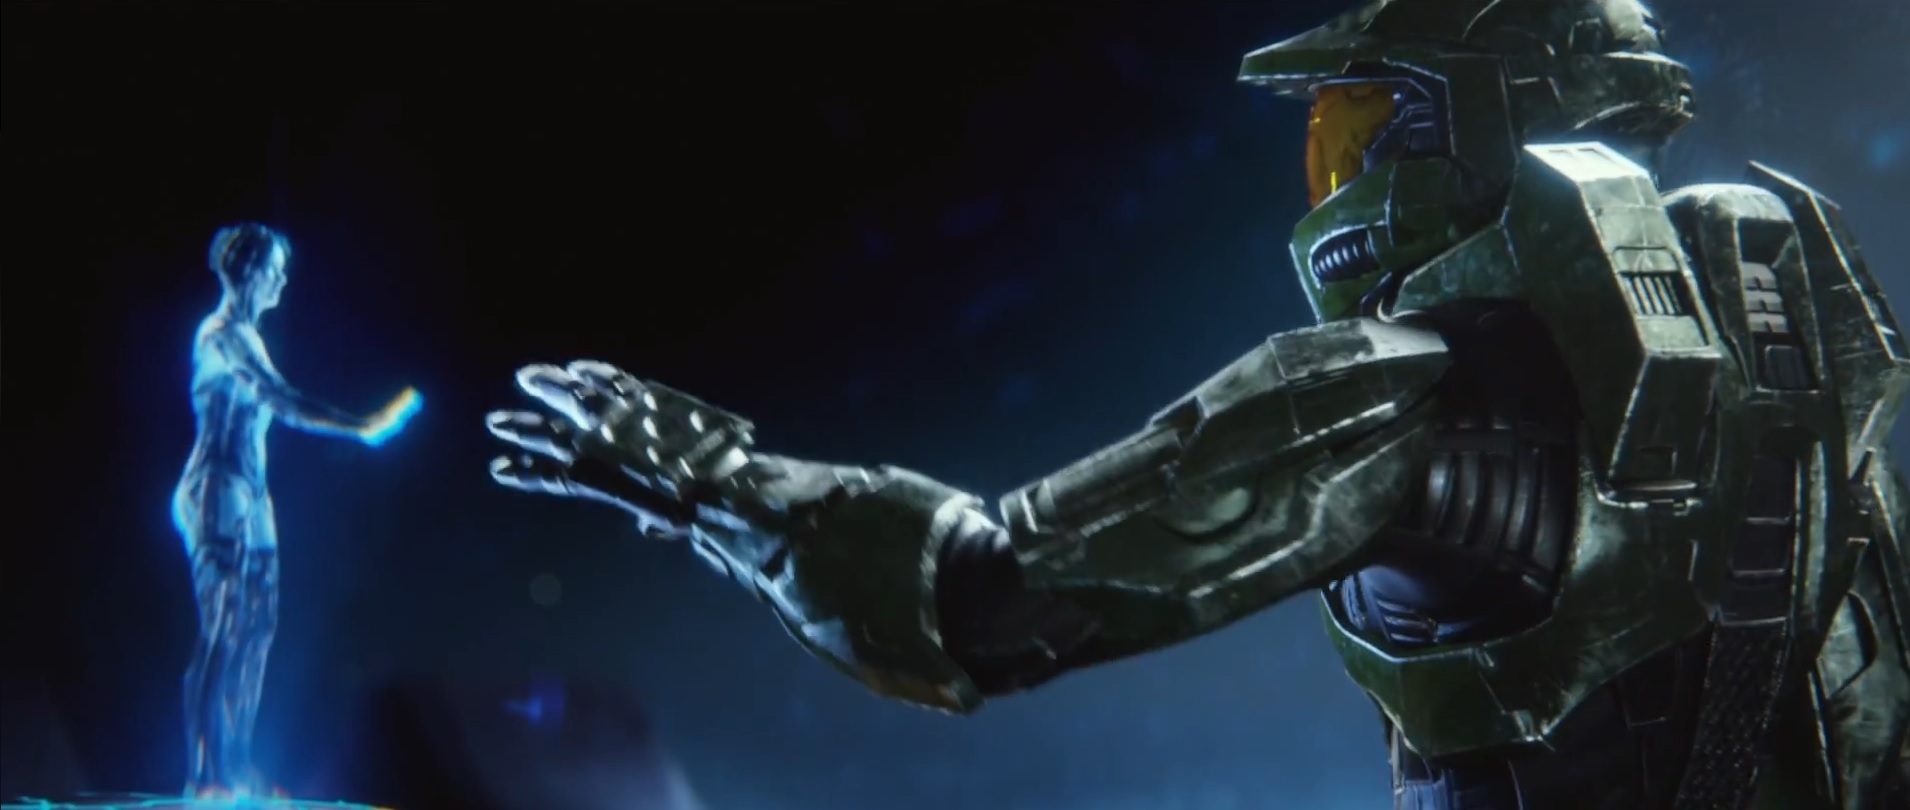 Halo Anniversary Launch Trailer Showcases New Cinematic Cutscenes